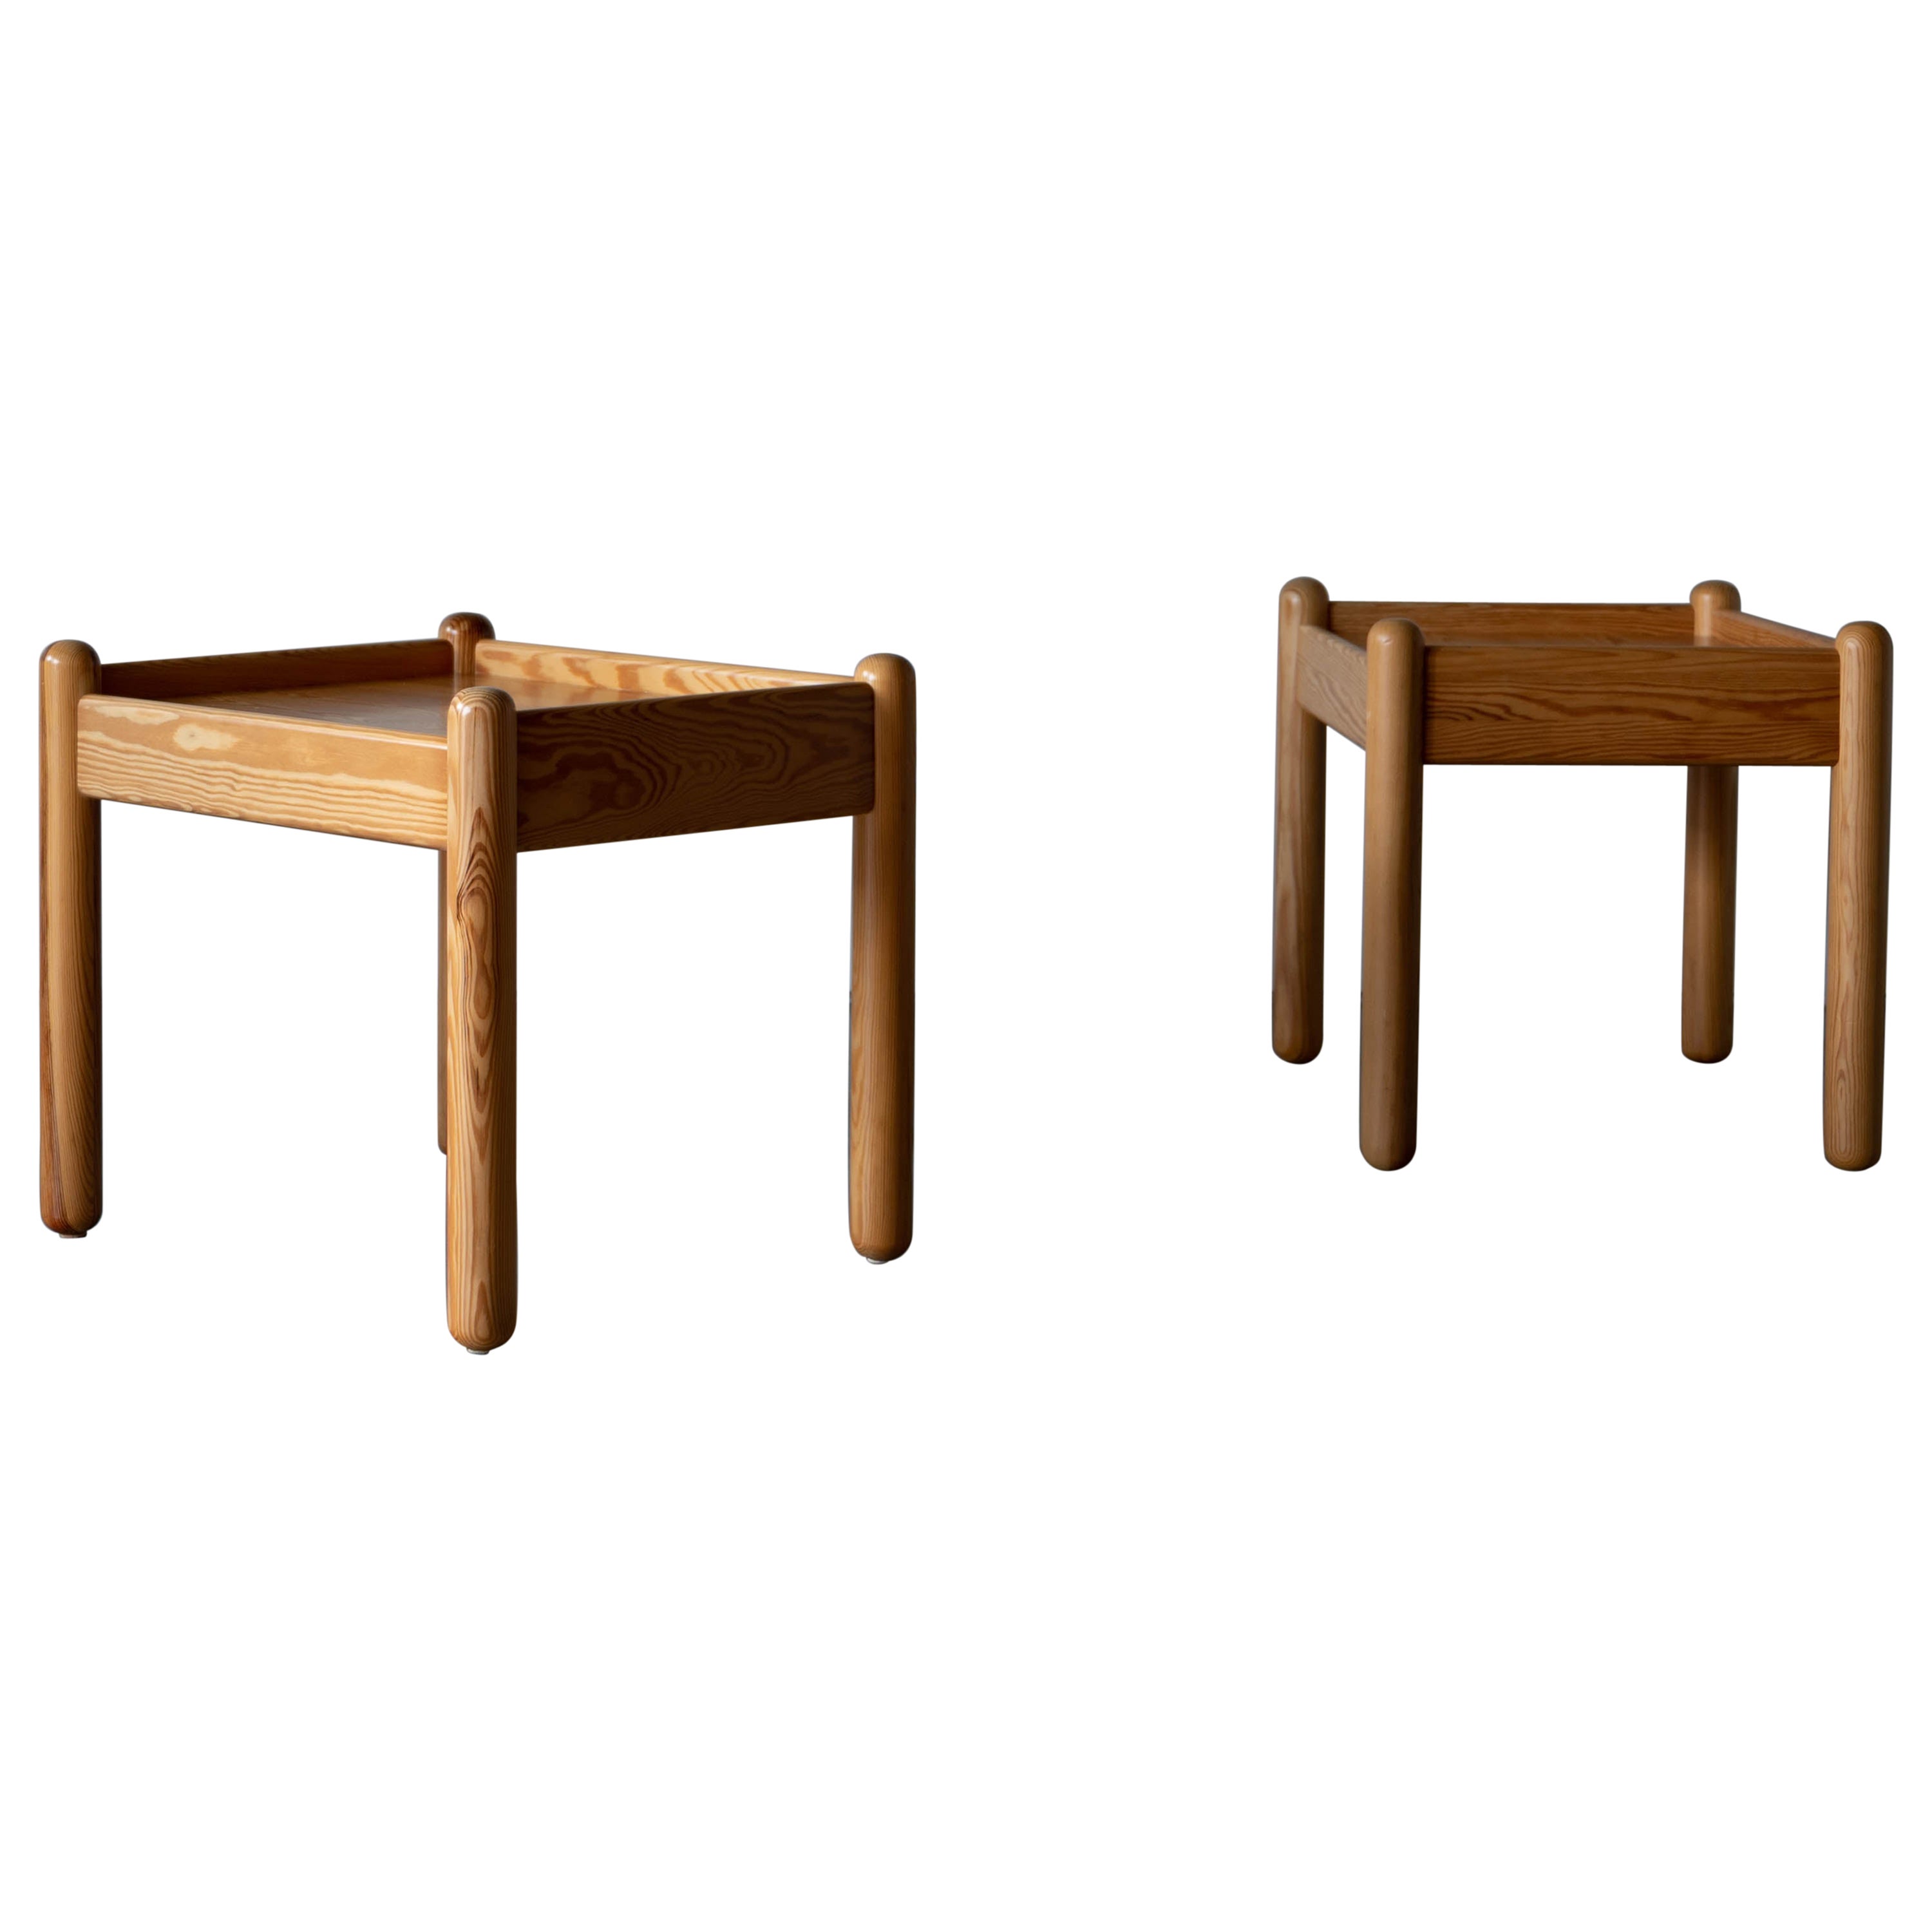 Swedish Designer, Bedside Tables / Side Tables, Solid Pine, Sweden, c, 1970s For Sale